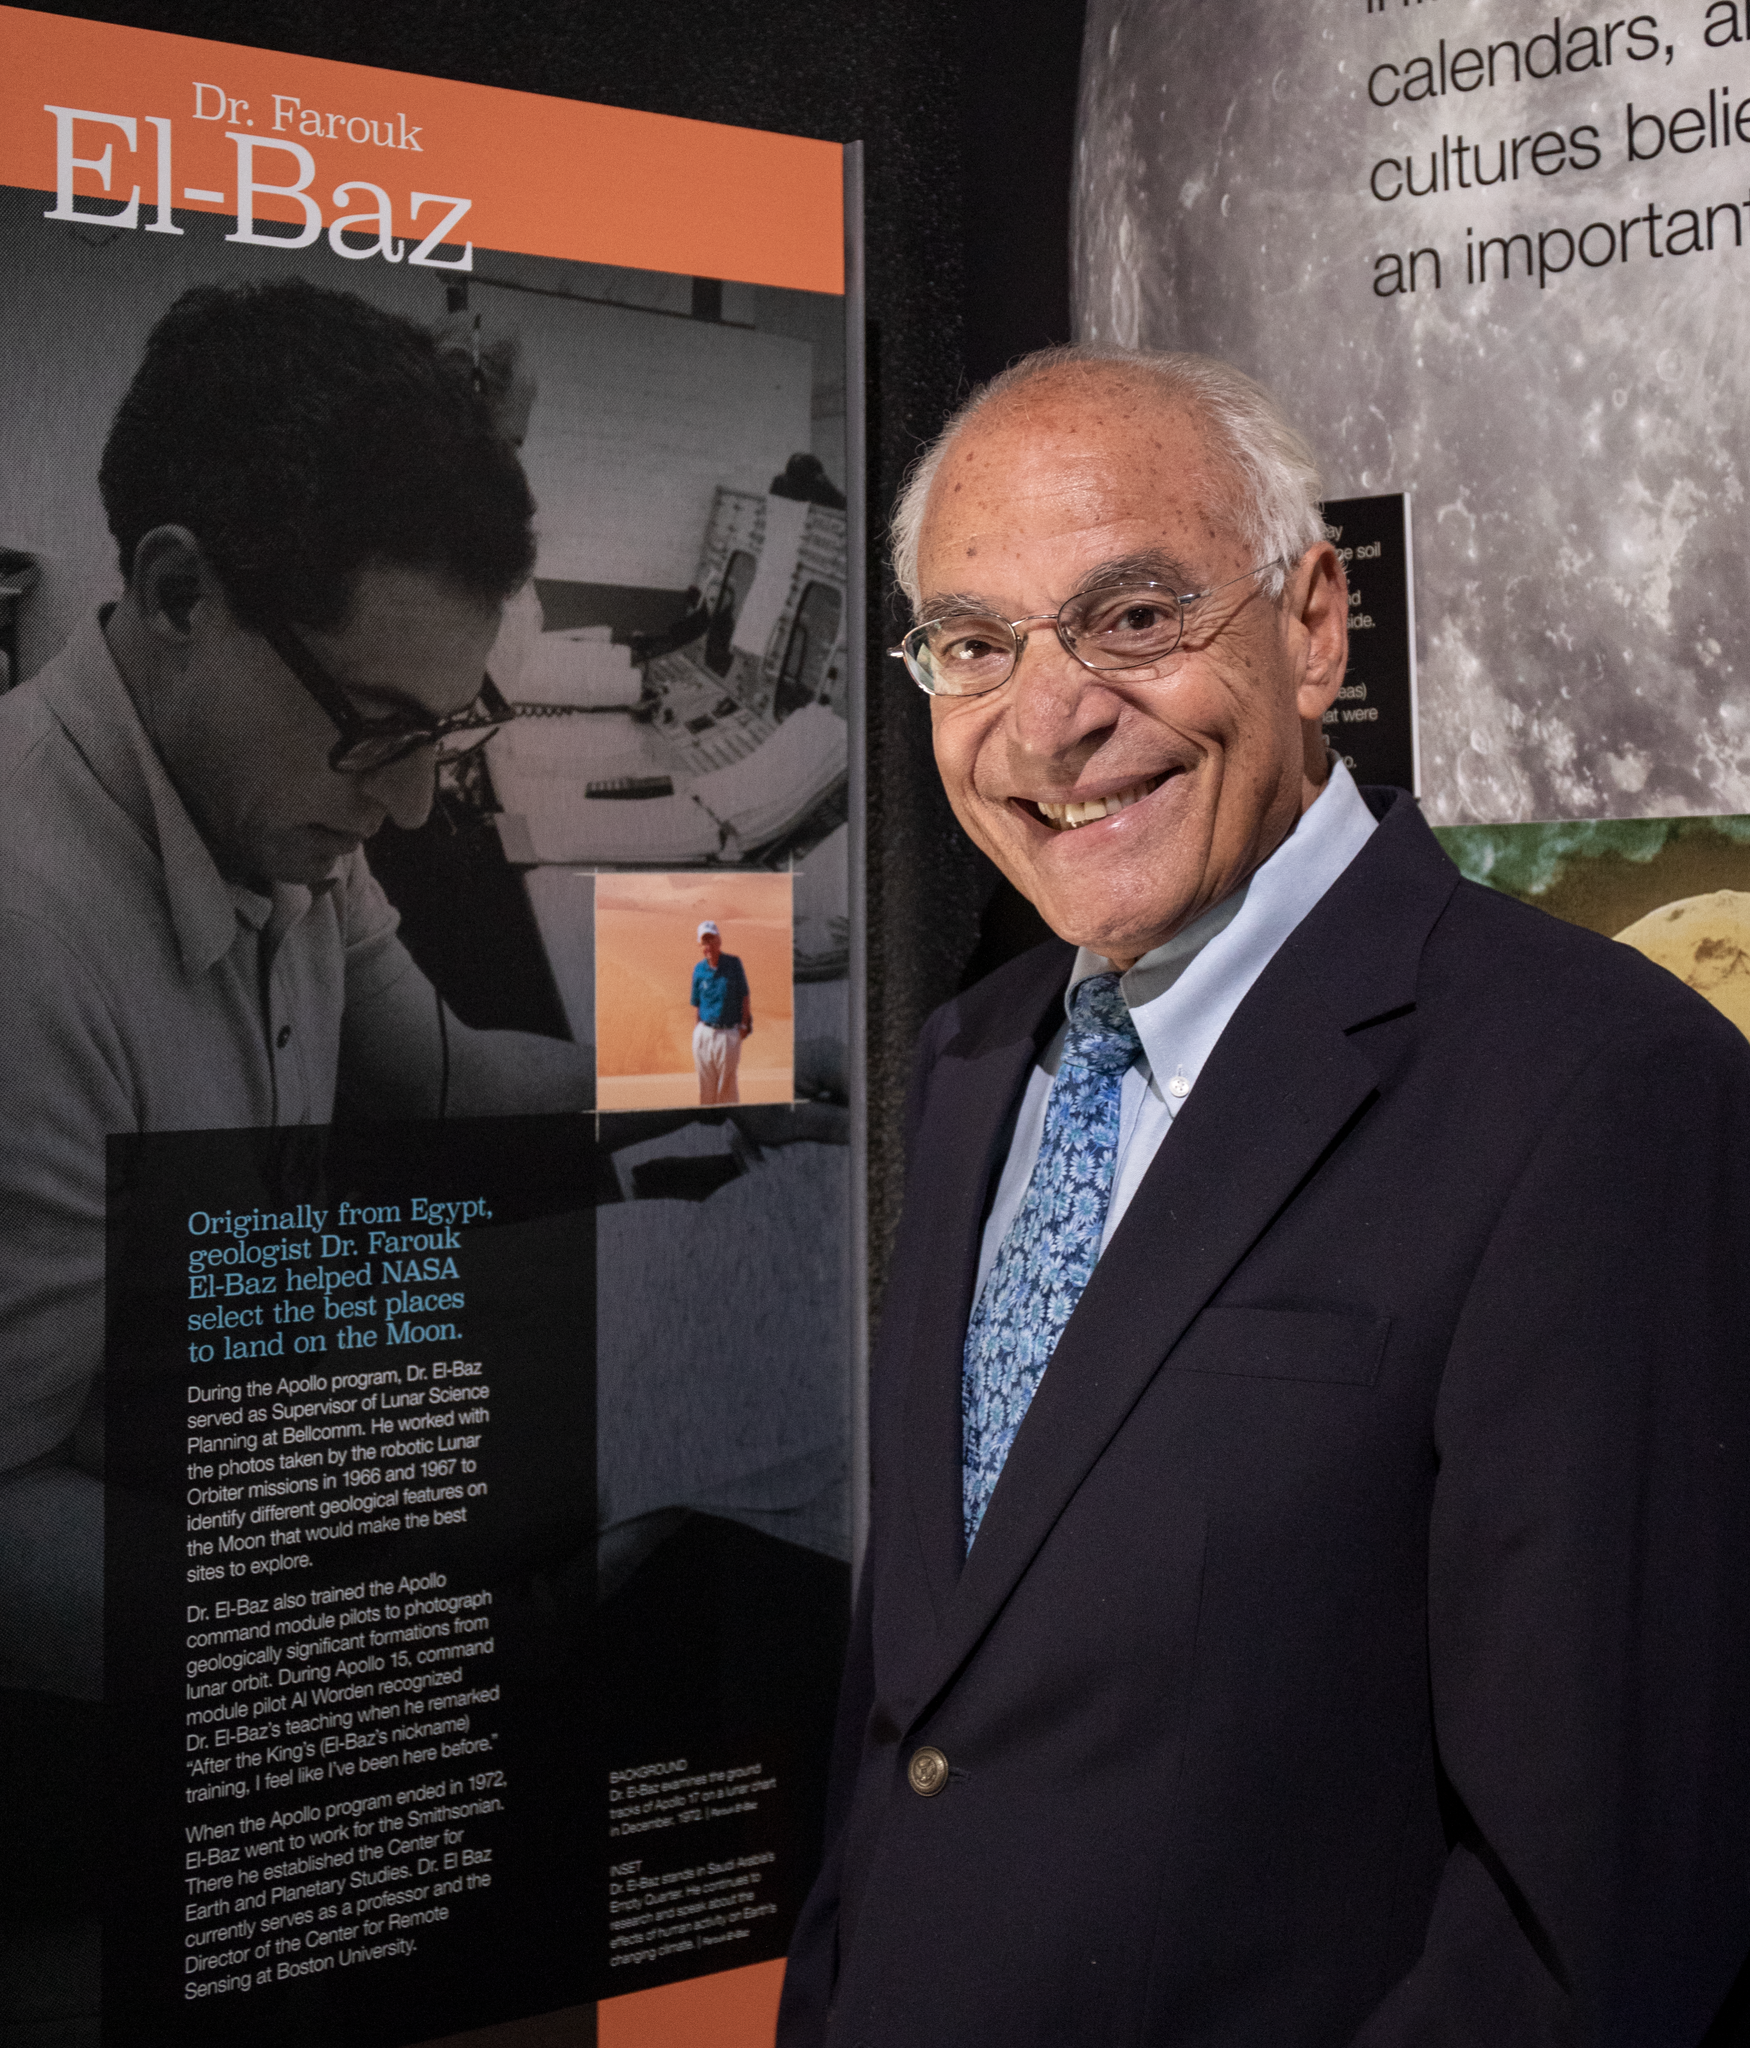 Dr. Farouk El-Baz in the Apollo exhibit at The Museum of Flight